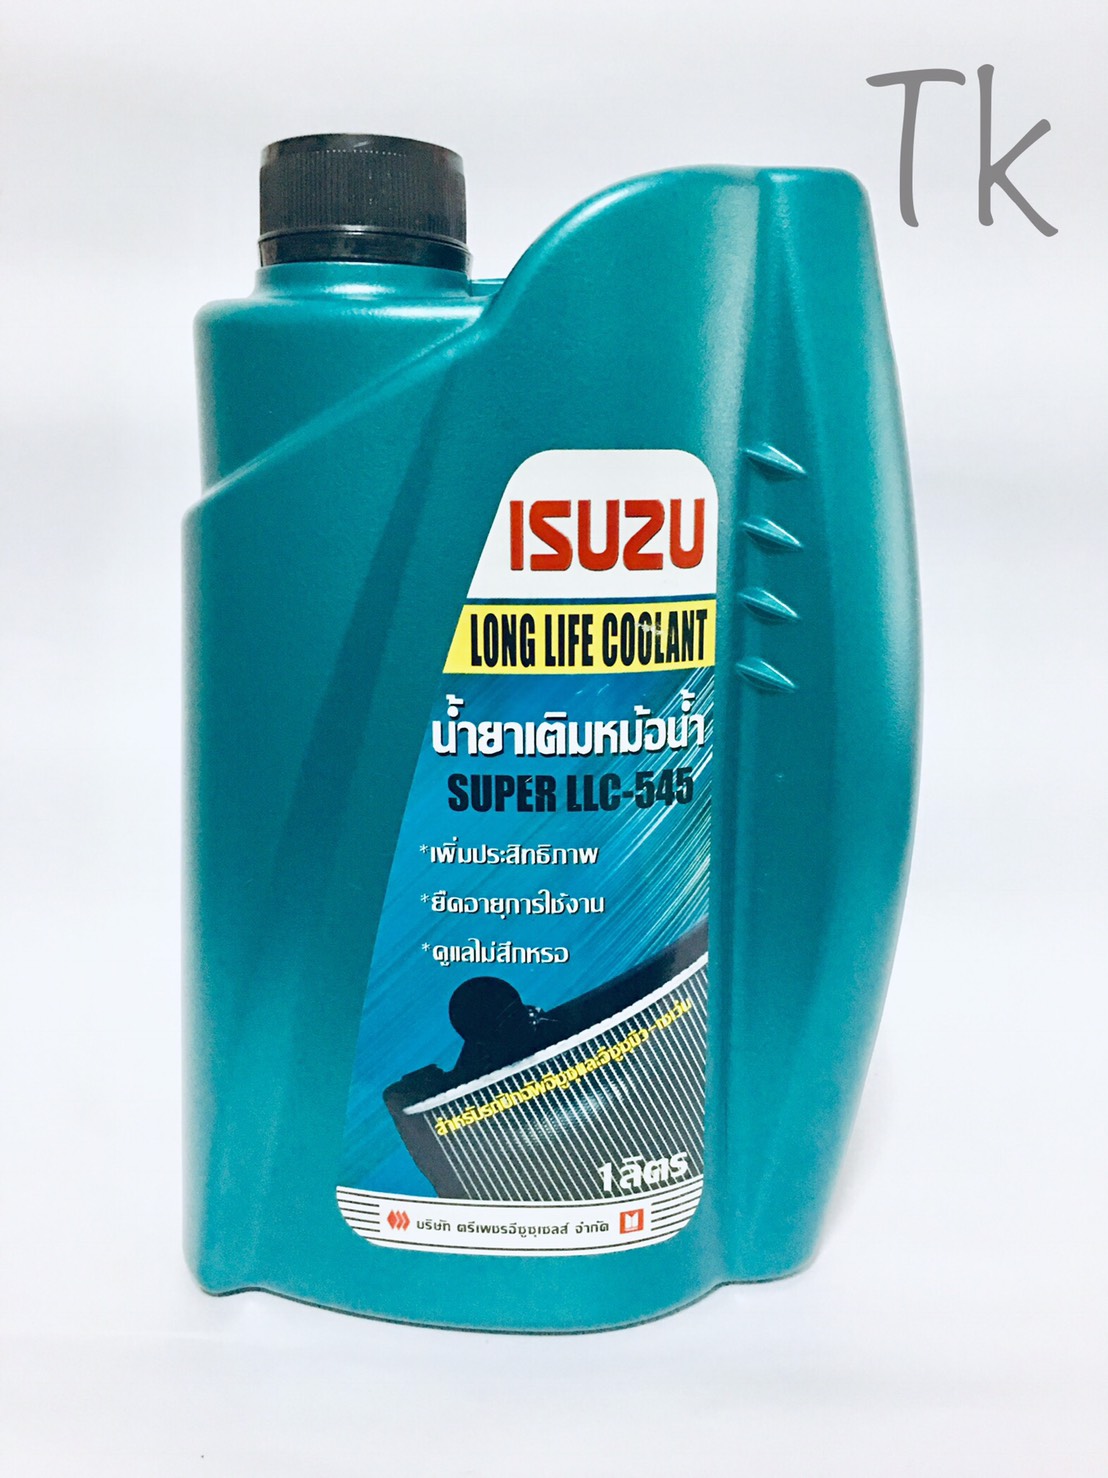 ISUZU น้ำยาเติมหม้อน้ำ SUPER LLC-545 ขนาด 1 ลิตร แท้